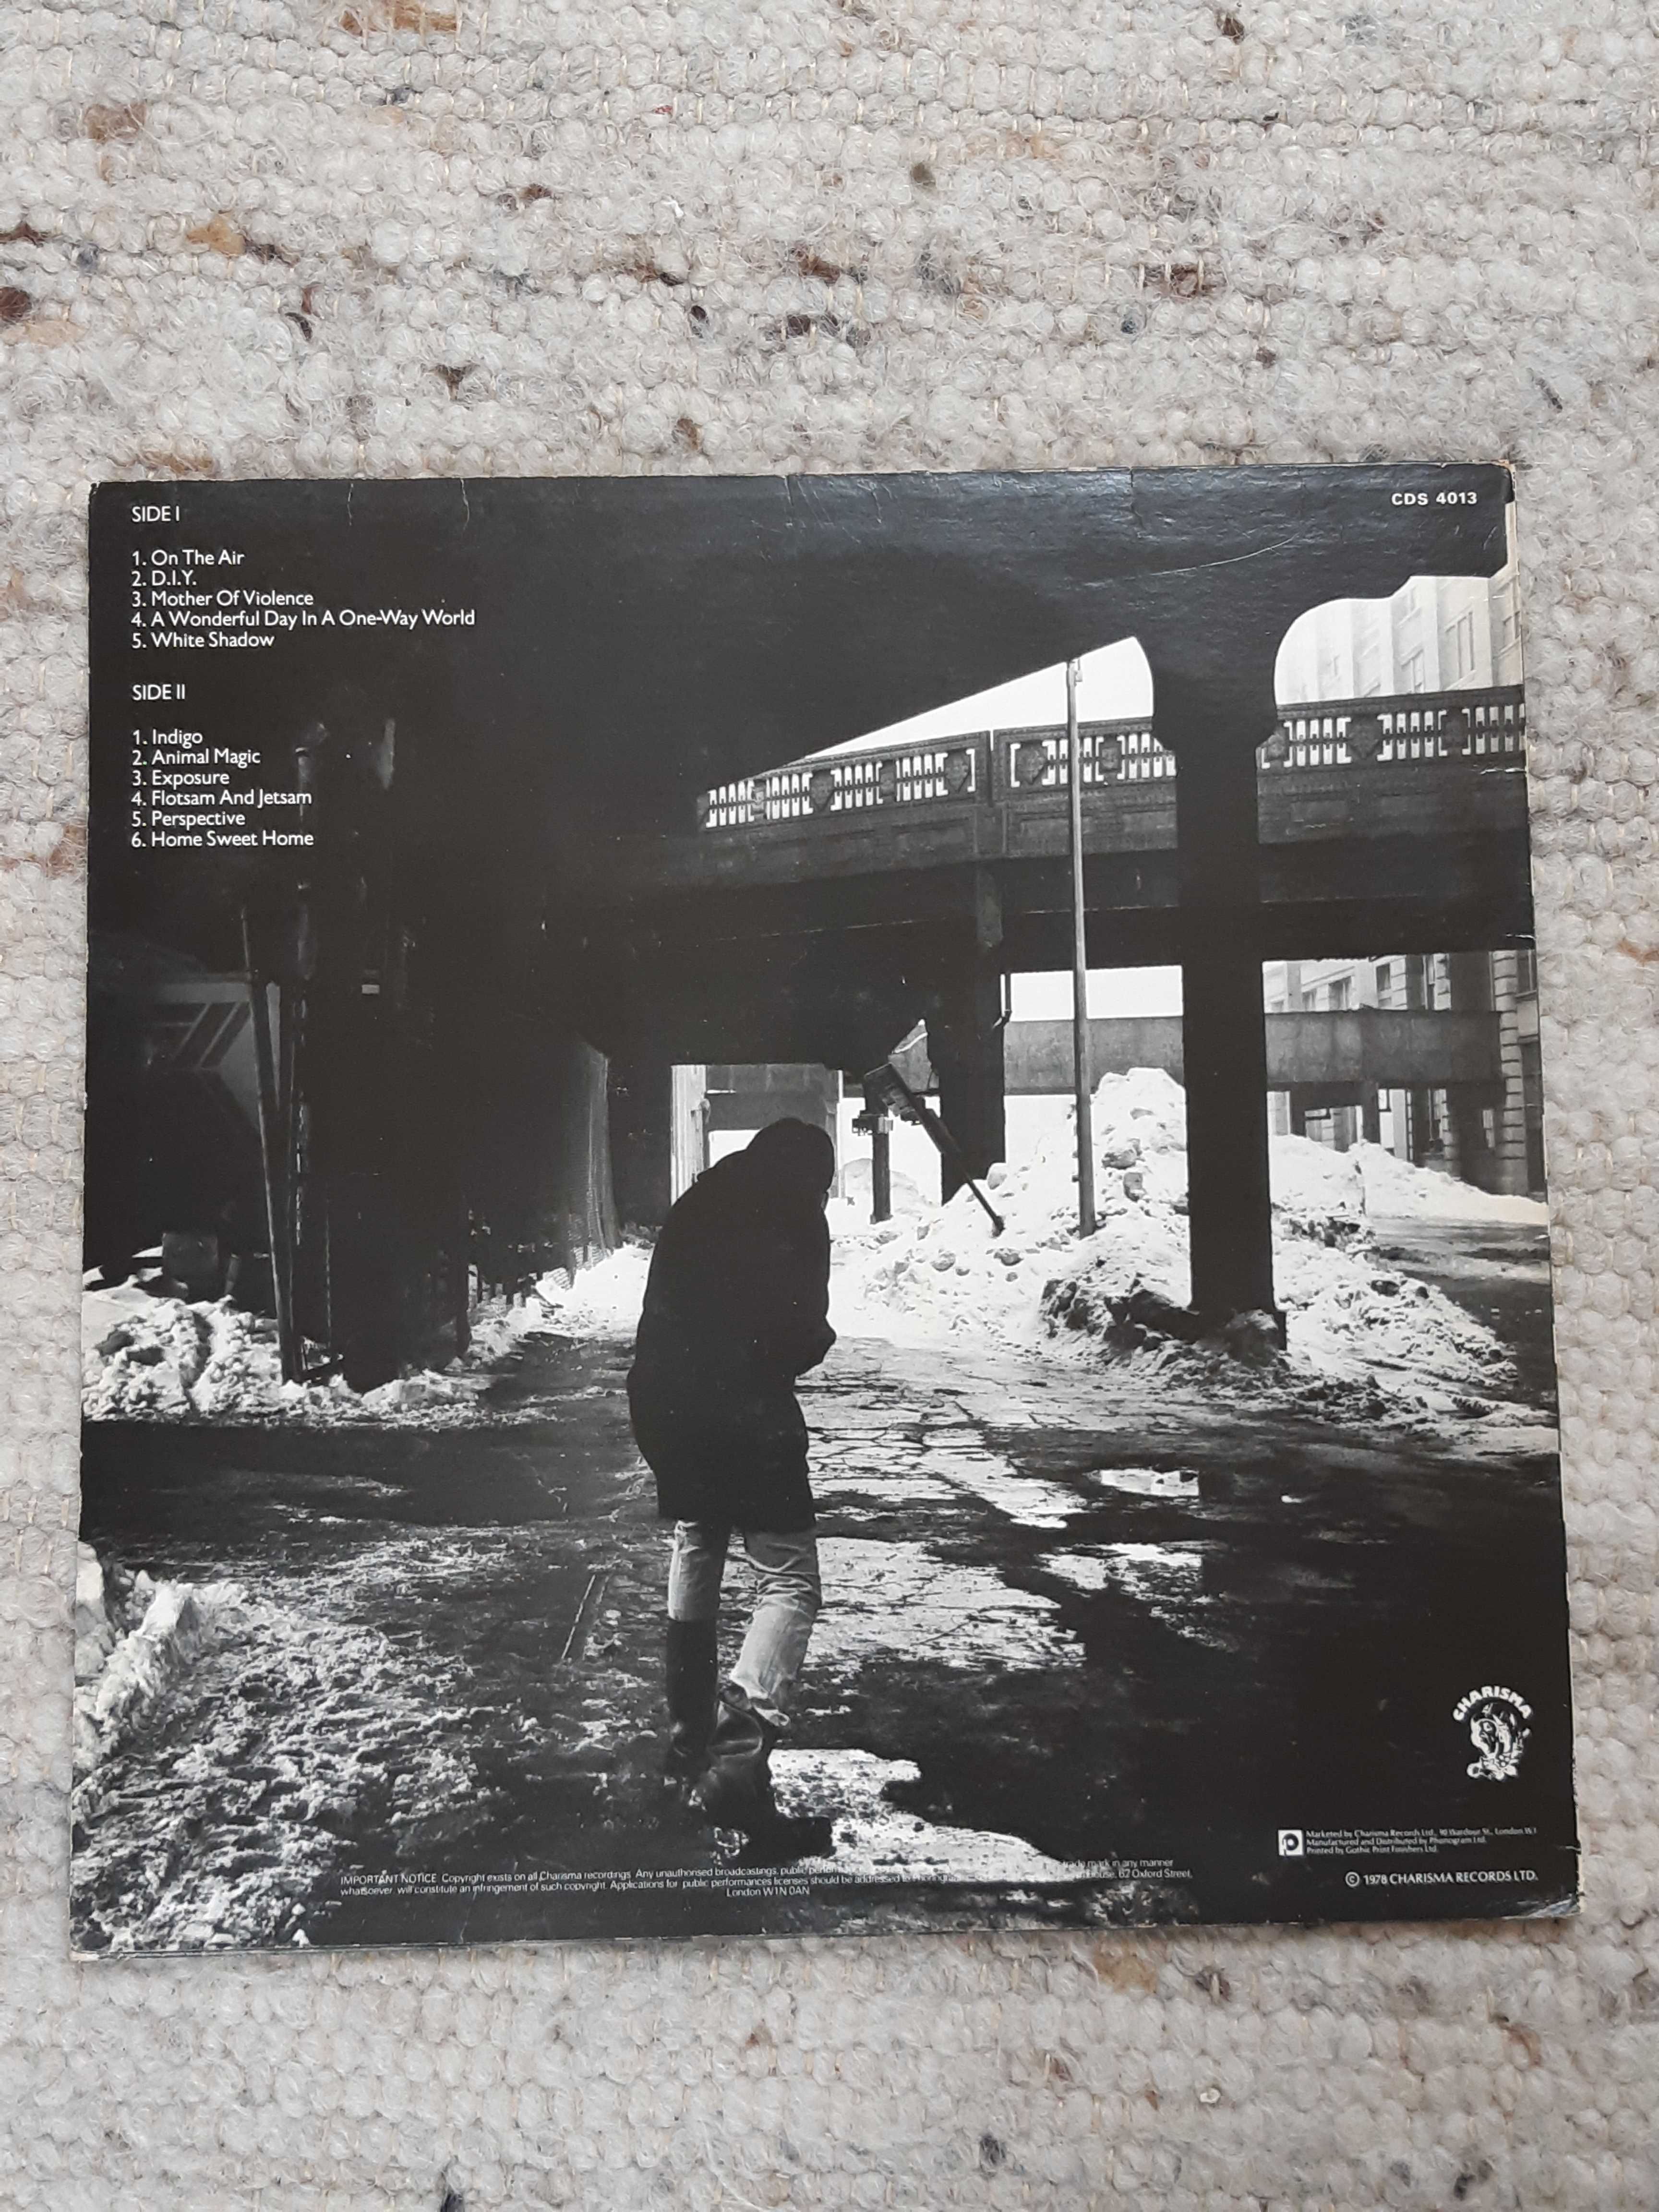 EX, 1. wyd. ang. 1978, Peter Gabriel LP Scratch, winyl King Crimson